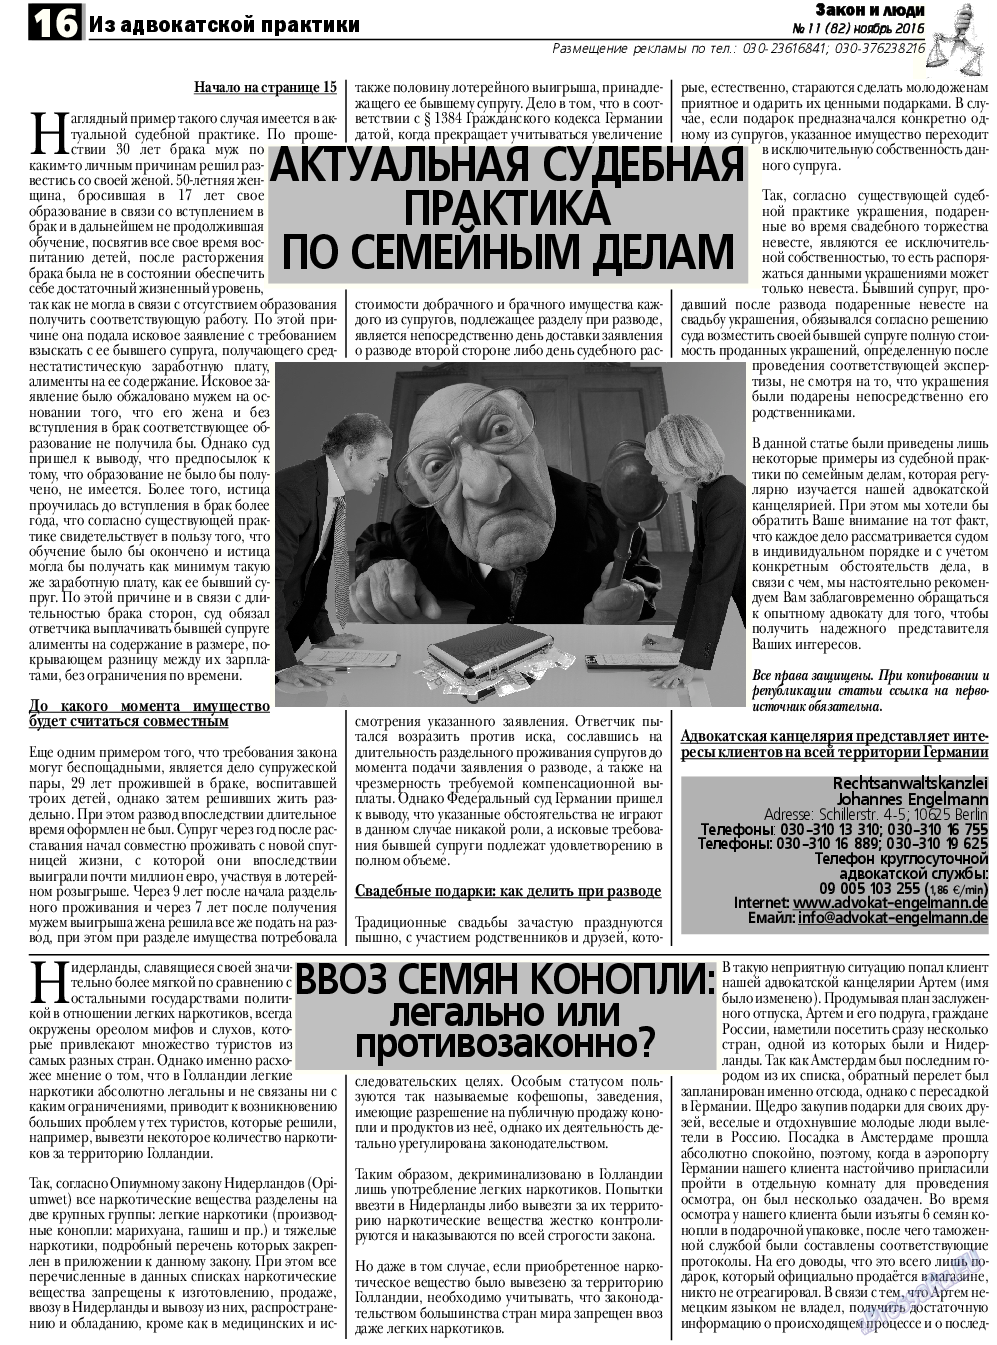 Закон и люди, газета. 2016 №11 стр.16